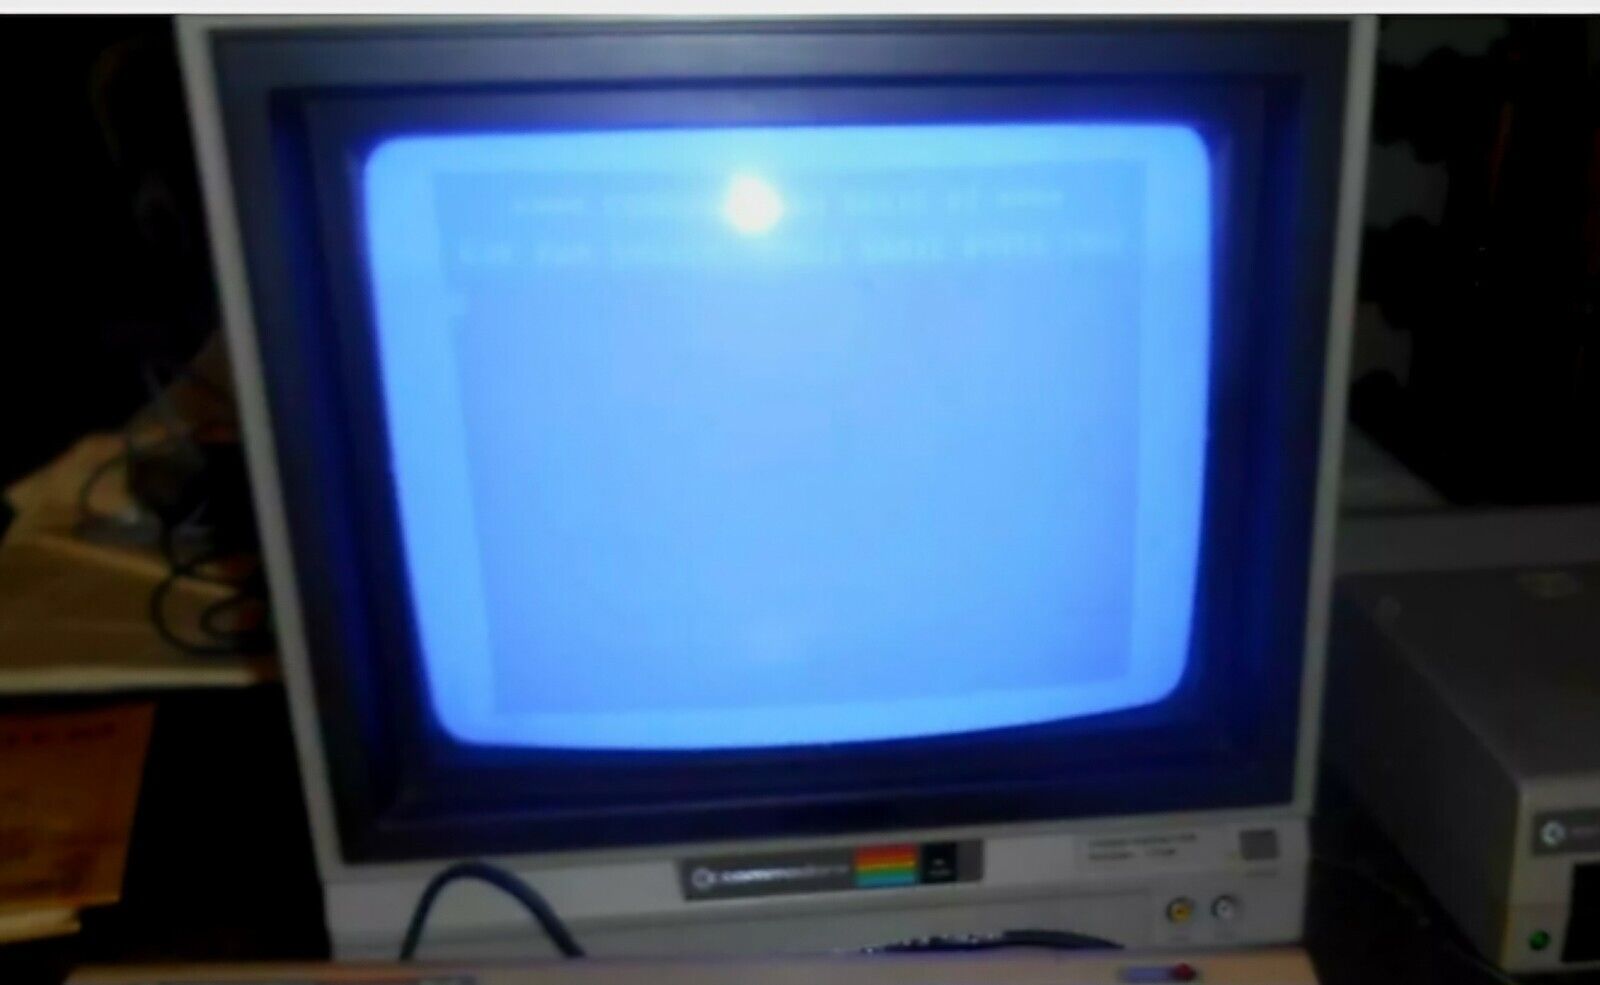  Commodore  Video Color Monitor Model 1702 